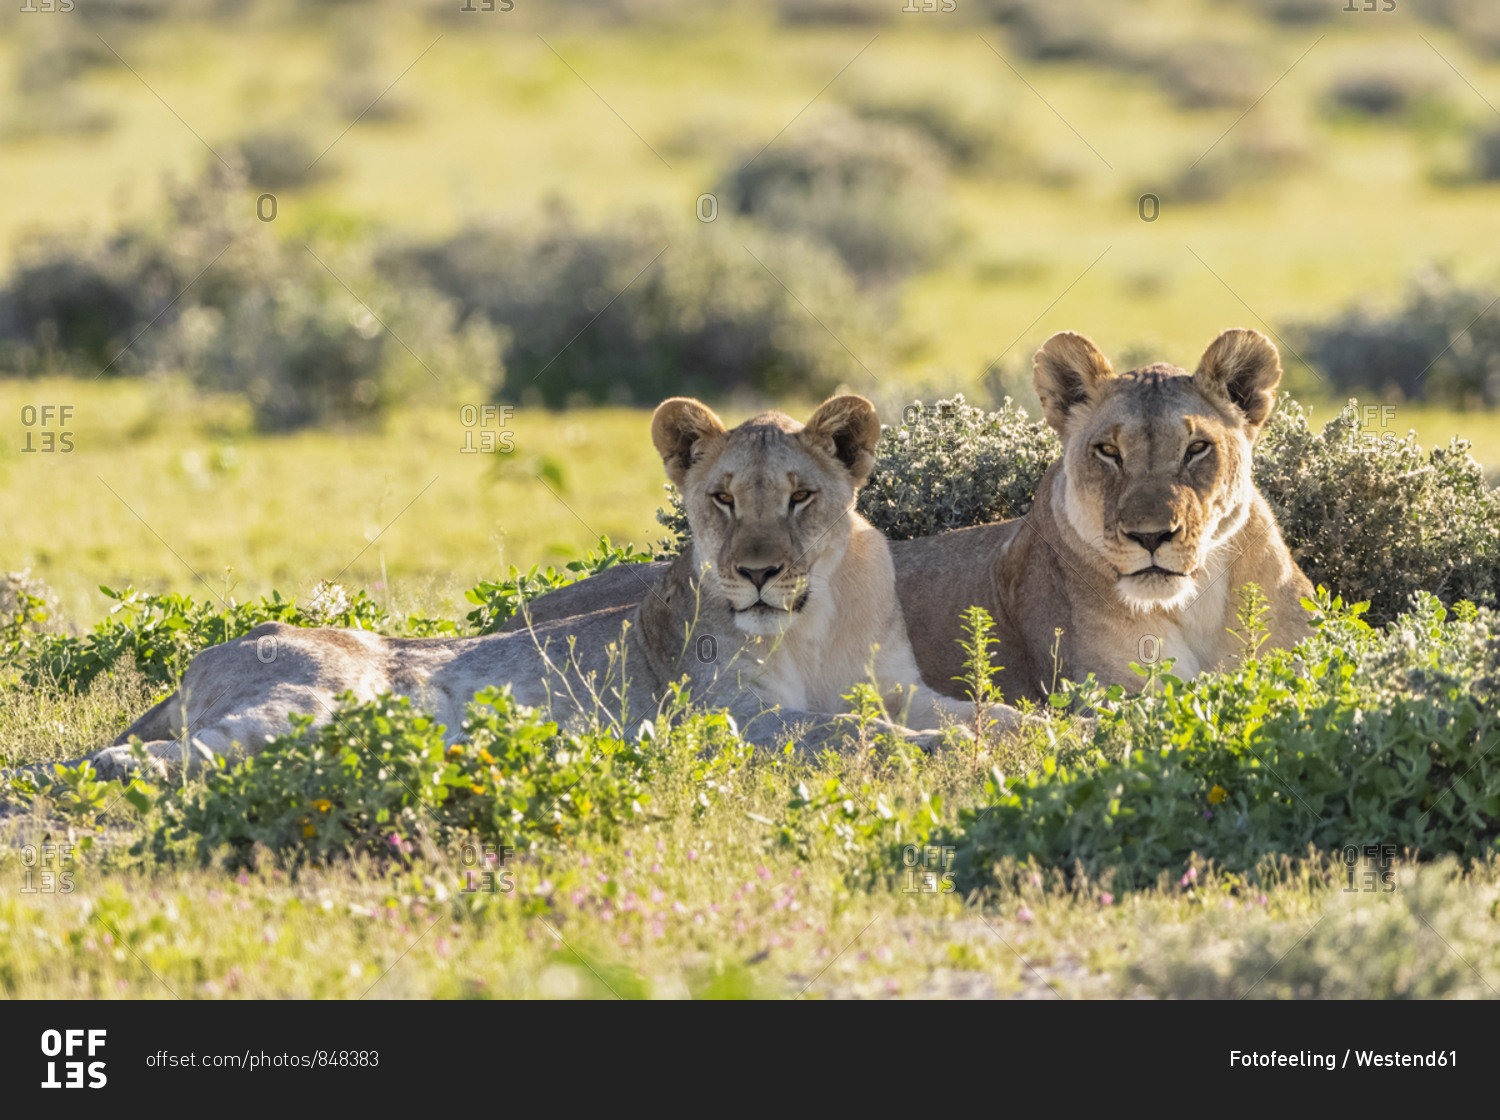 Africa- Namibia- Etosha National Park- lions- Panthera leo- mother animal and young animal lying